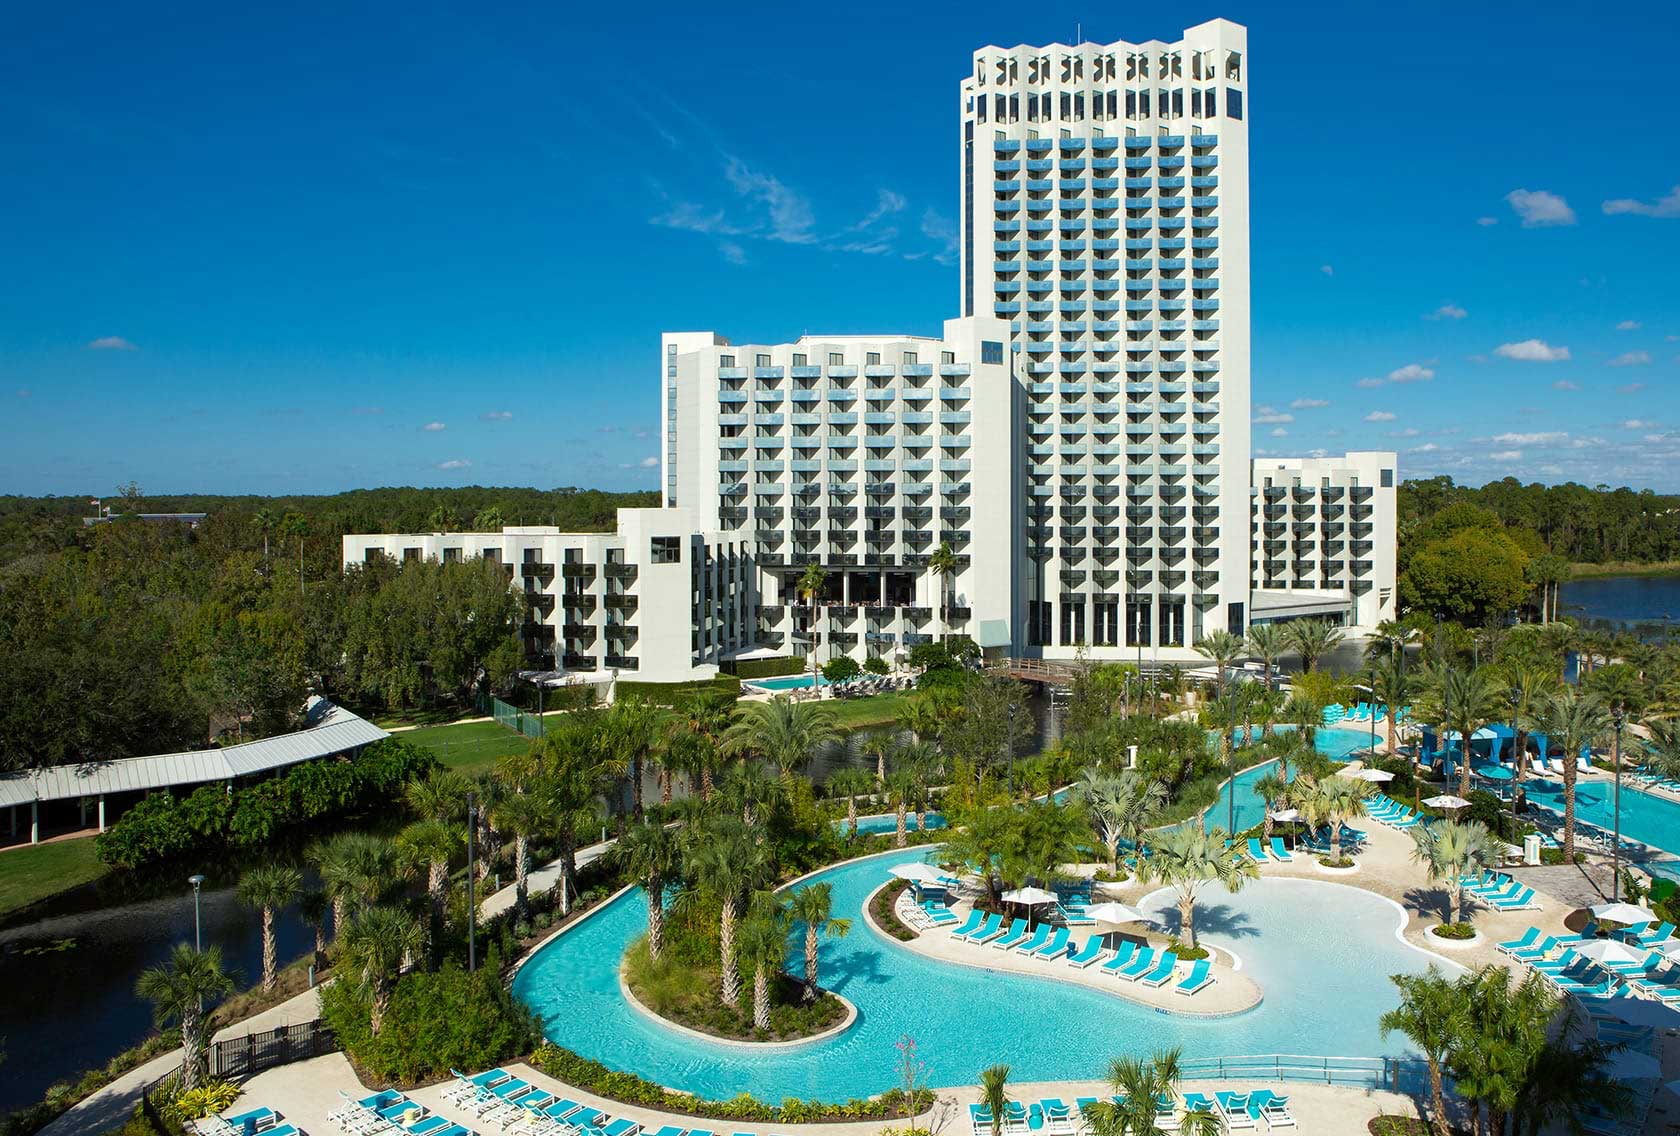 save Disney Springs Hotels